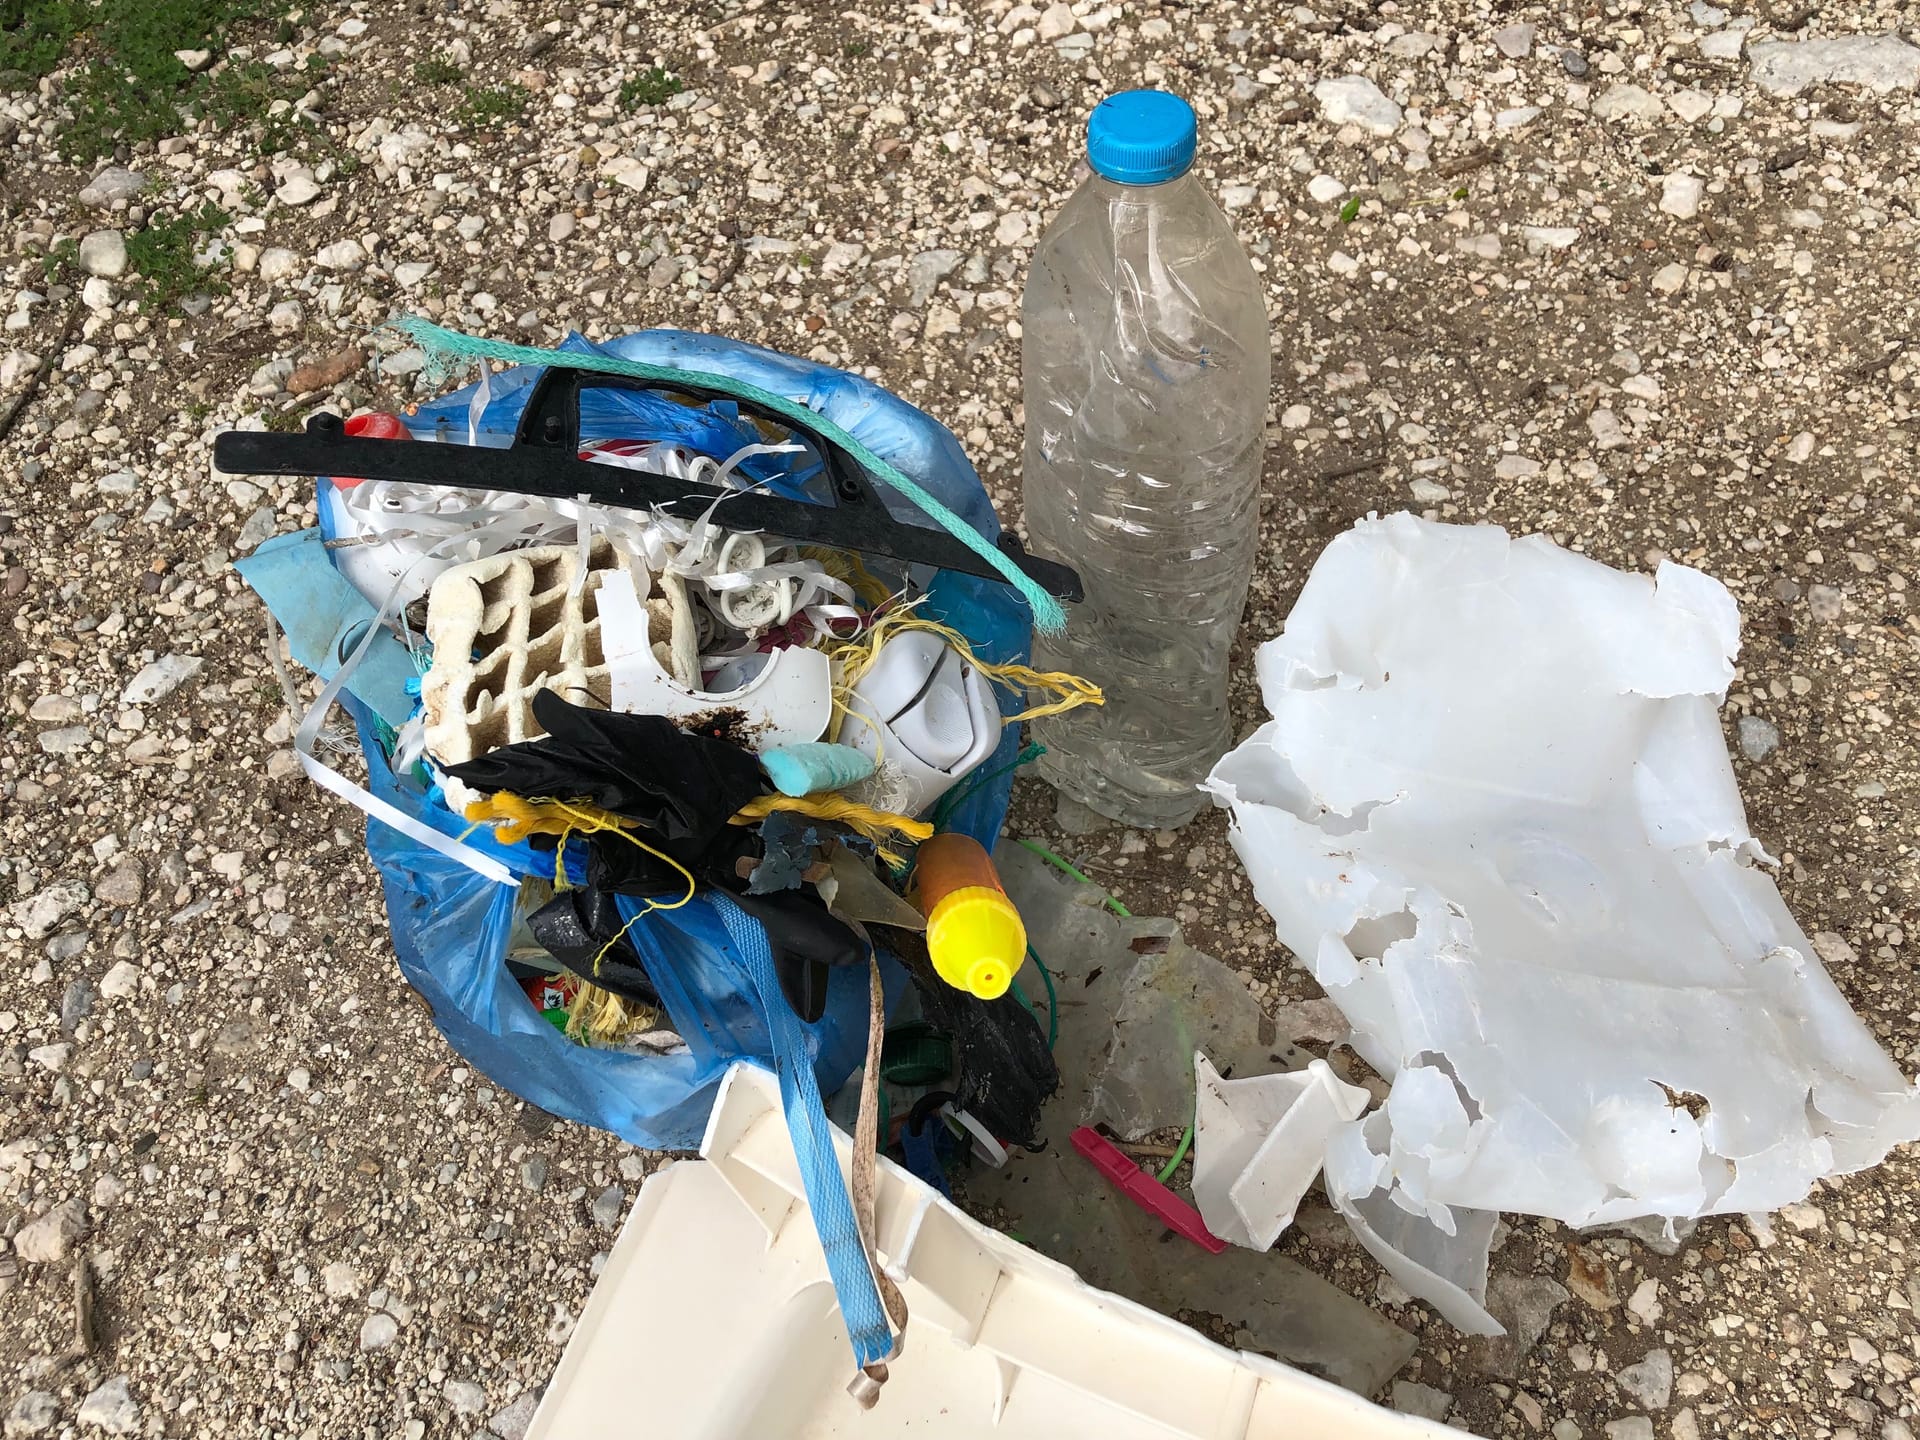 Plastikmüll vom Strand: Beim Urlaub auf einer griechischen Insel sammelte unsere Kollegin jede Menge Müll, der am Strand lag. Auf dem Bild sieht man das Ergebnis einer zehn-minütigen Sammelaktion.